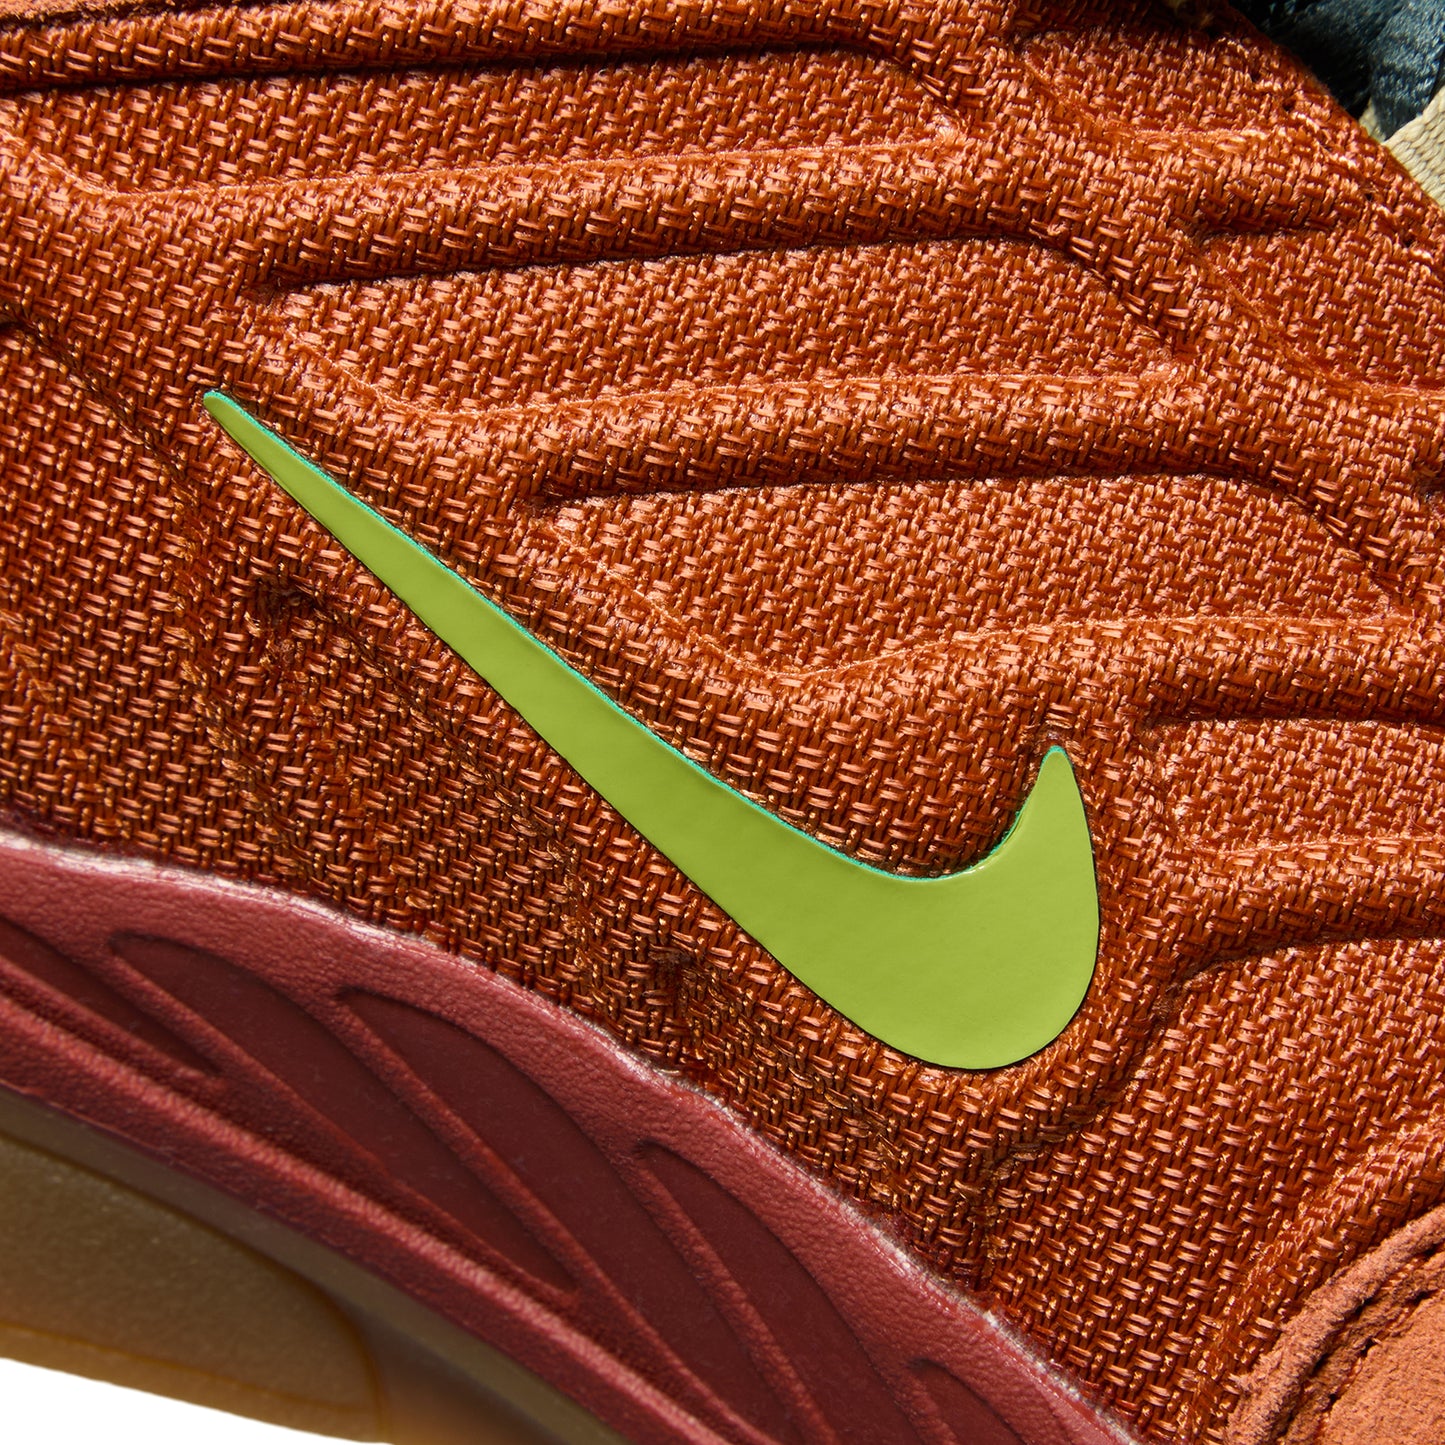 Nike SB Vertebrae (Dark Russet/Pear/Desert Orange)